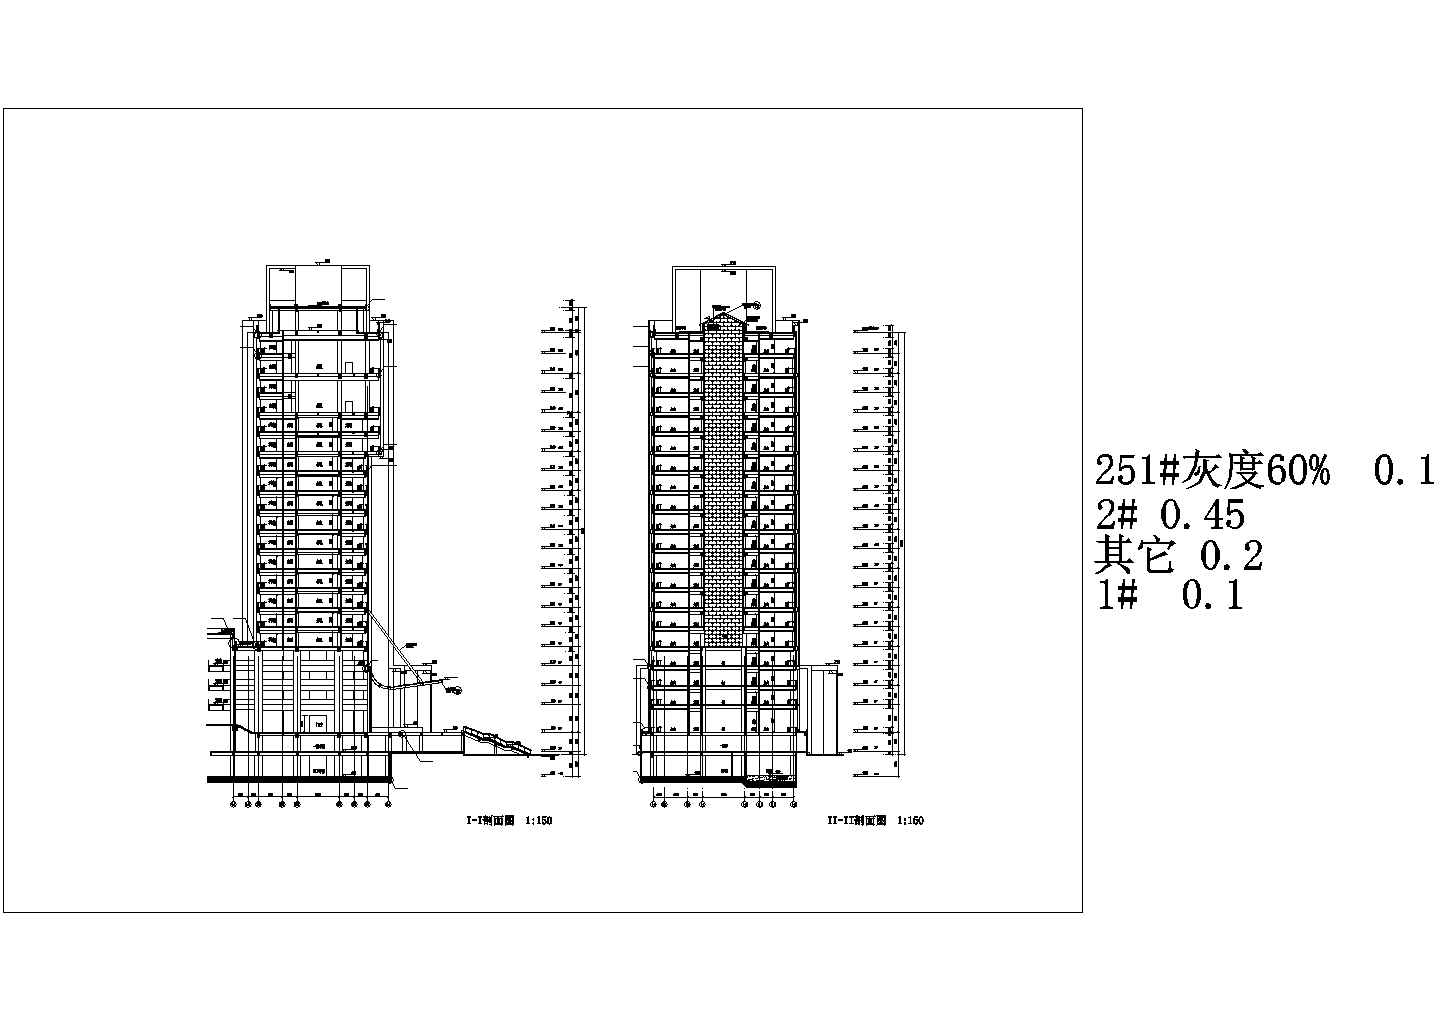 铁岭市民中心23层办公楼建筑施工图(知名大学设计)